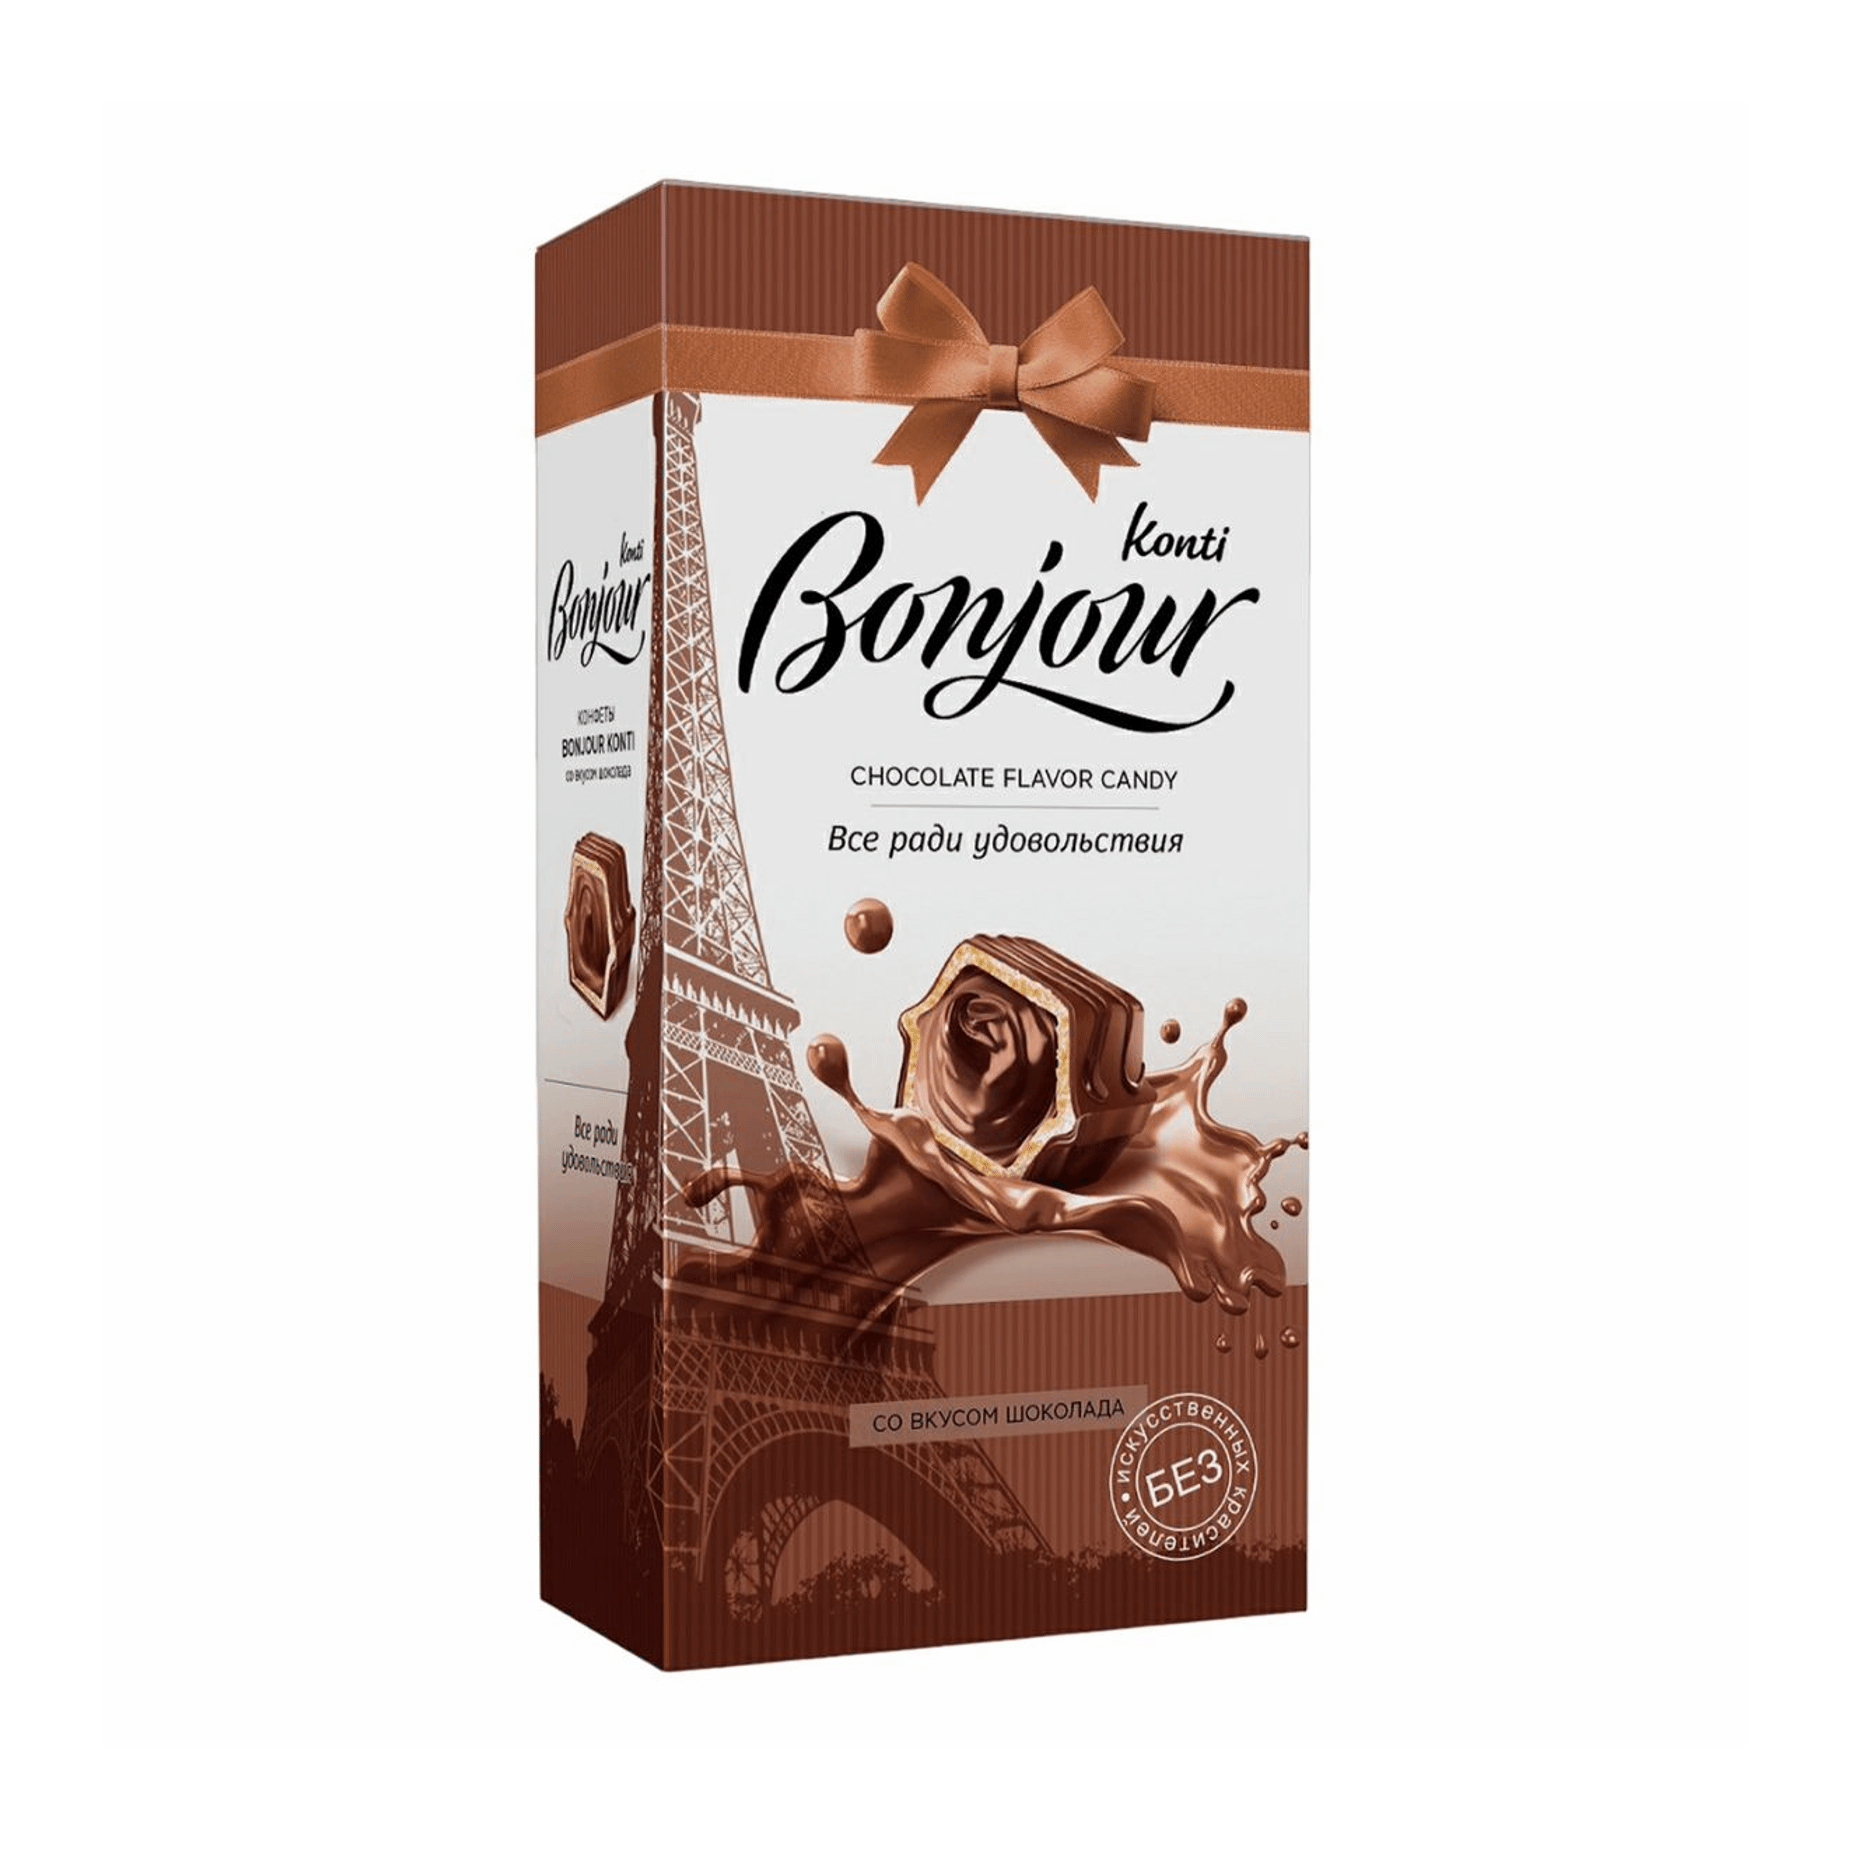 конфеты шоколадные истории konti джек с вафельной крошкой 250 г Конфеты шоколадные Konti Bonjour со вкусом шоколада 80 г